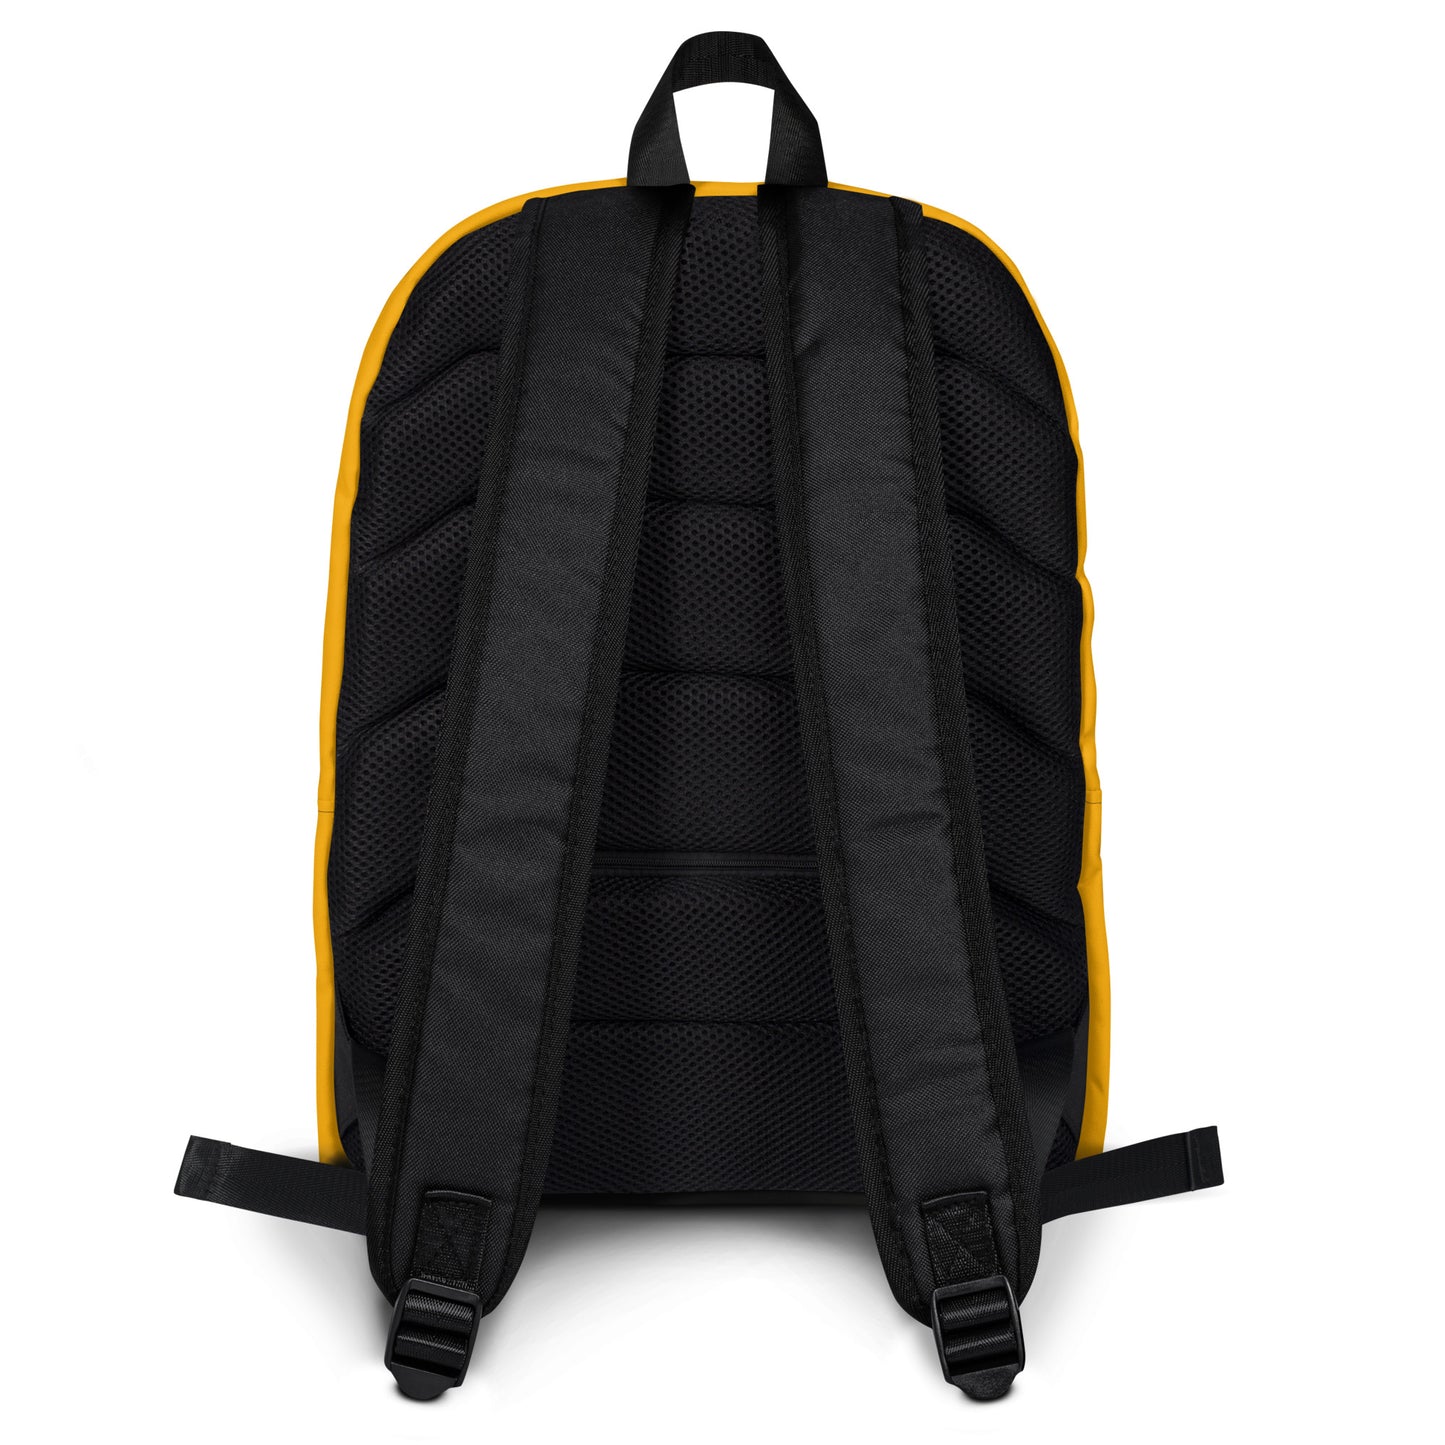 Classic Yellow L X V I Backpack